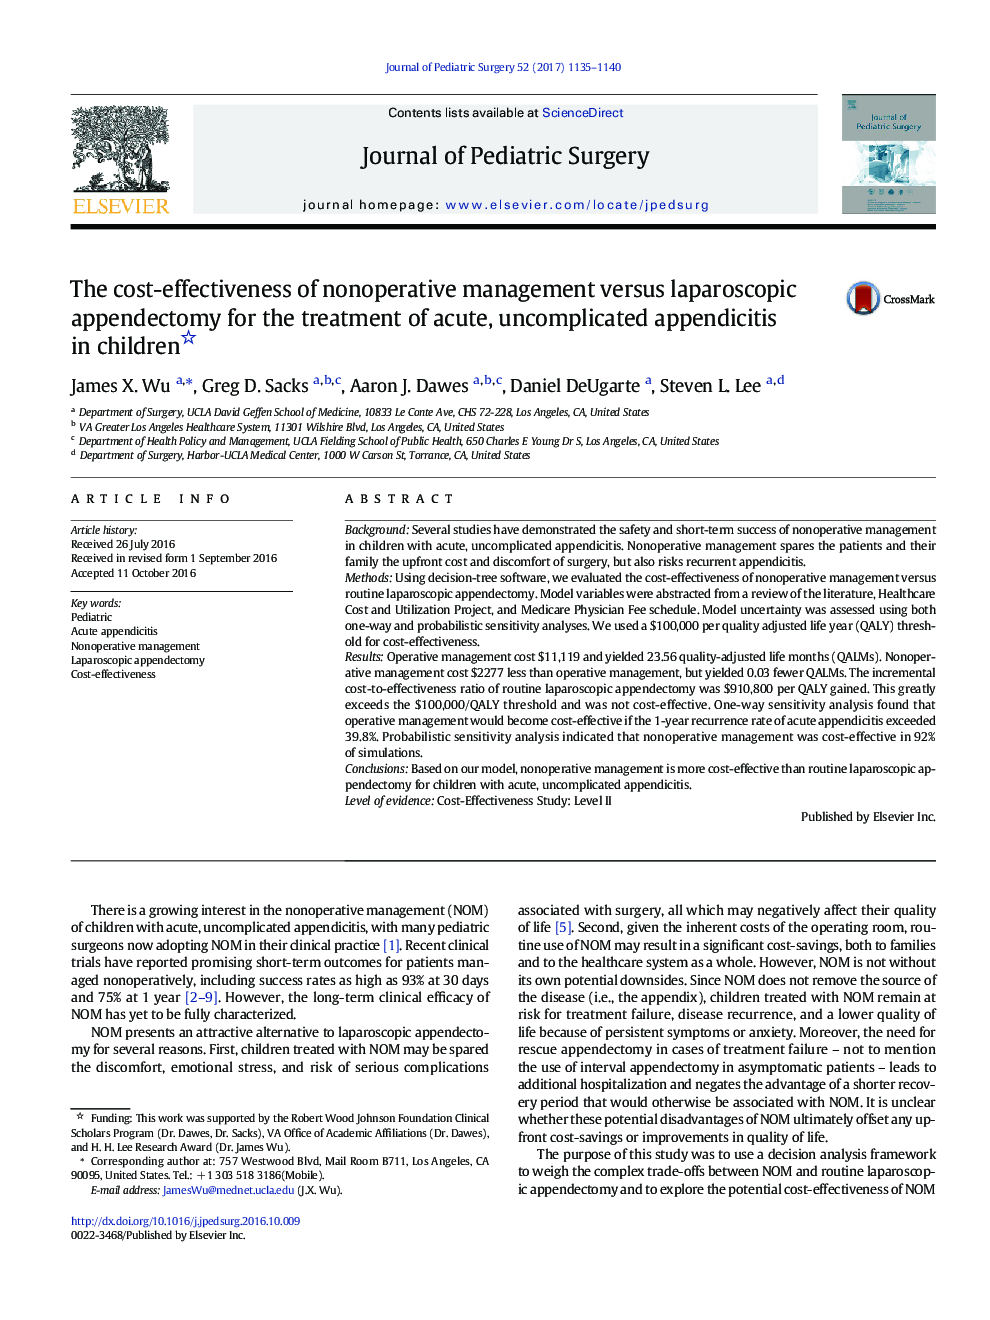 مقاله بالینی. هزینه-اثربخشی مدیریت غیر عملیاتی در مقابل آپاندکتومی لاپاروسکوپی برای درمان آپاندیسیت حاد و غیر عادی در کودکان 